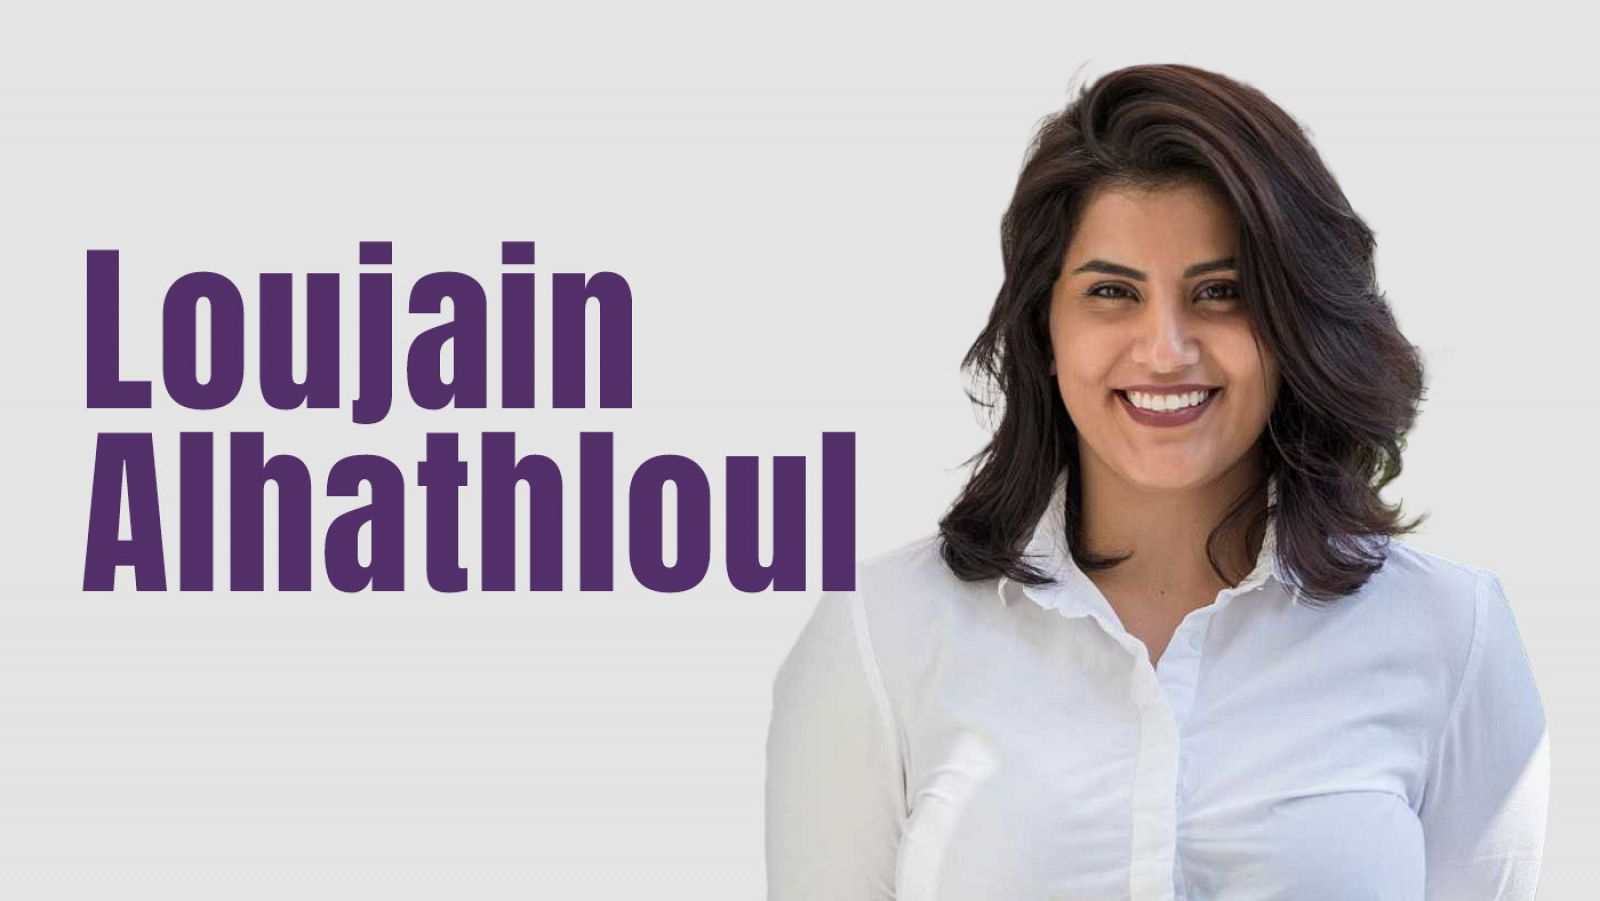 Loujain Alhathloul ha estado en prisión por sus actos en defensa de los derechos de la mujer en Arabia Saudí